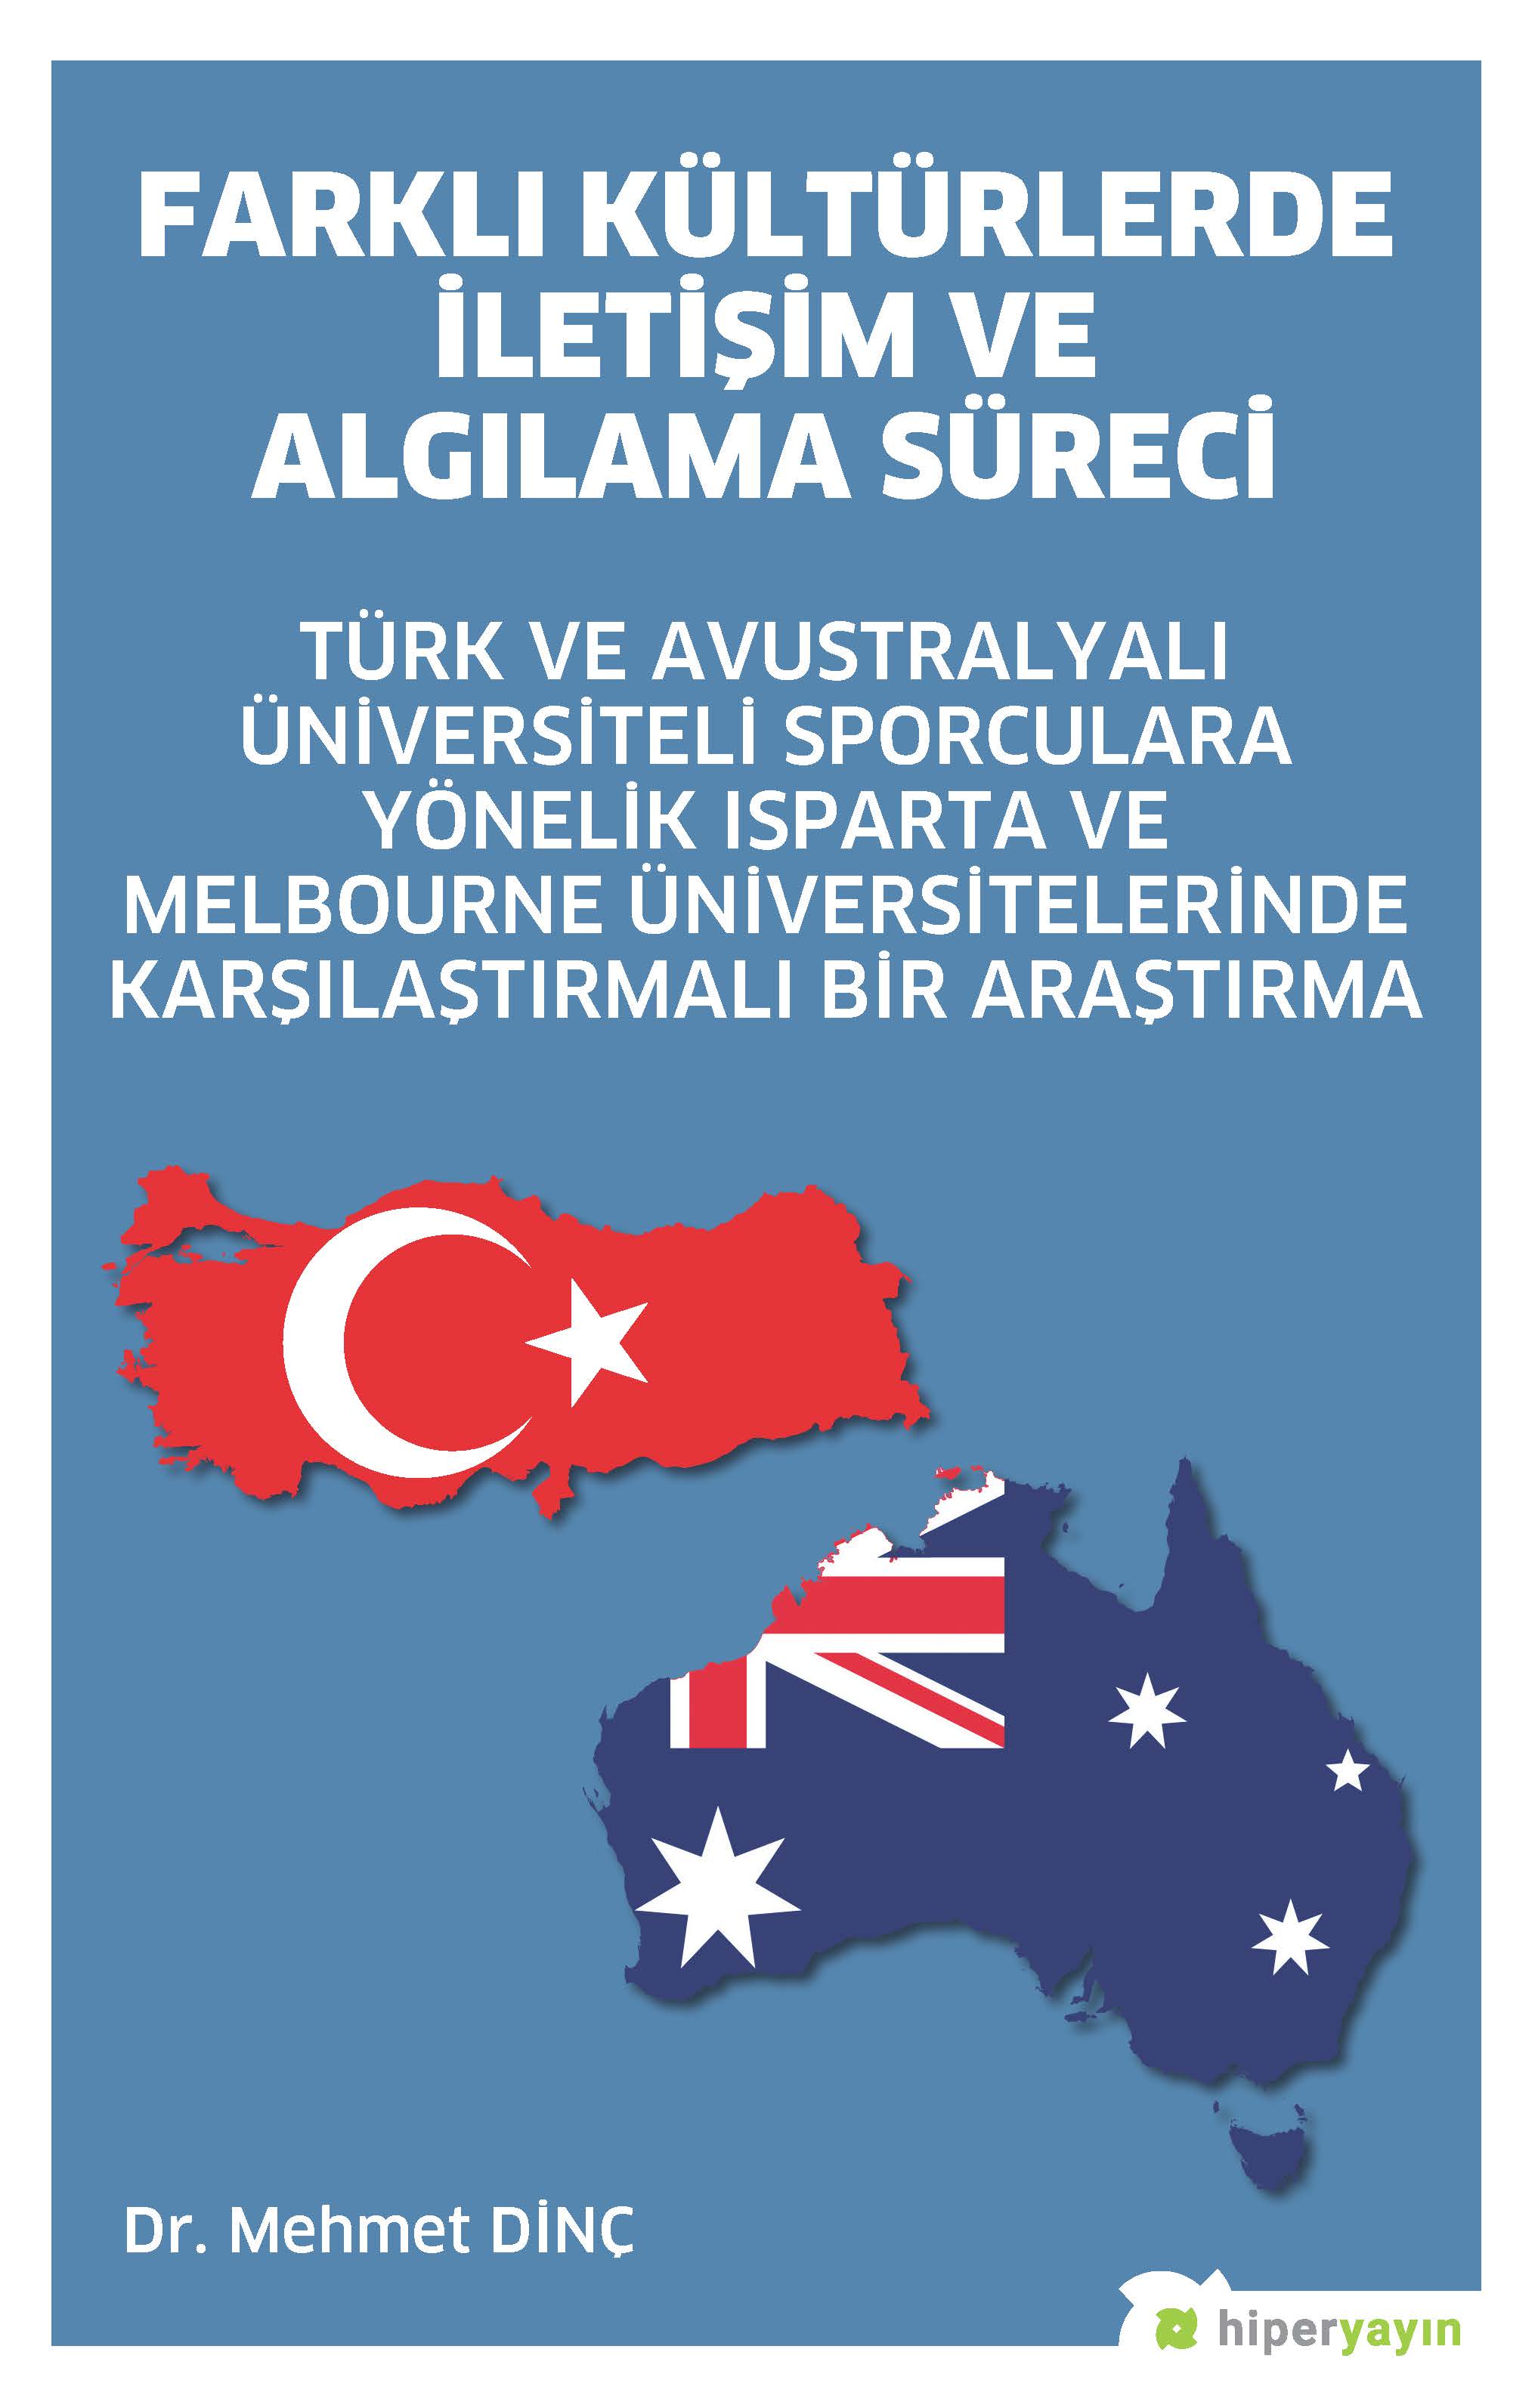 Farklı Kültürlerde İletişim ve Algılama Süreci Türk ve Avustralyalı Üniversiteli Sporculara Yönelik Isparta ve Melbourne Üniversitelerinde Karşılaştırmalı Bir Araştırma